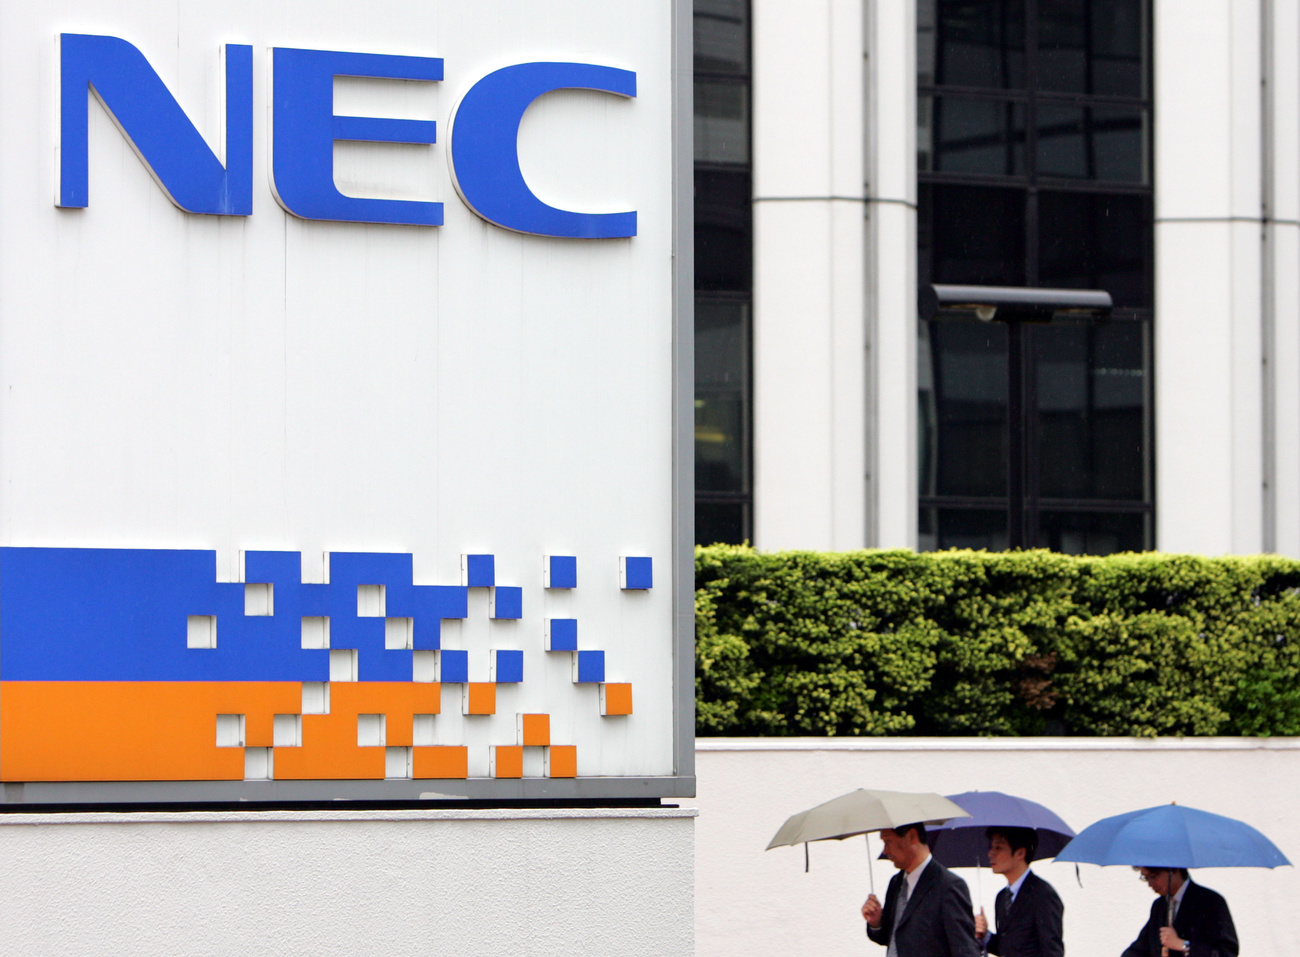 NEC office in Japan.